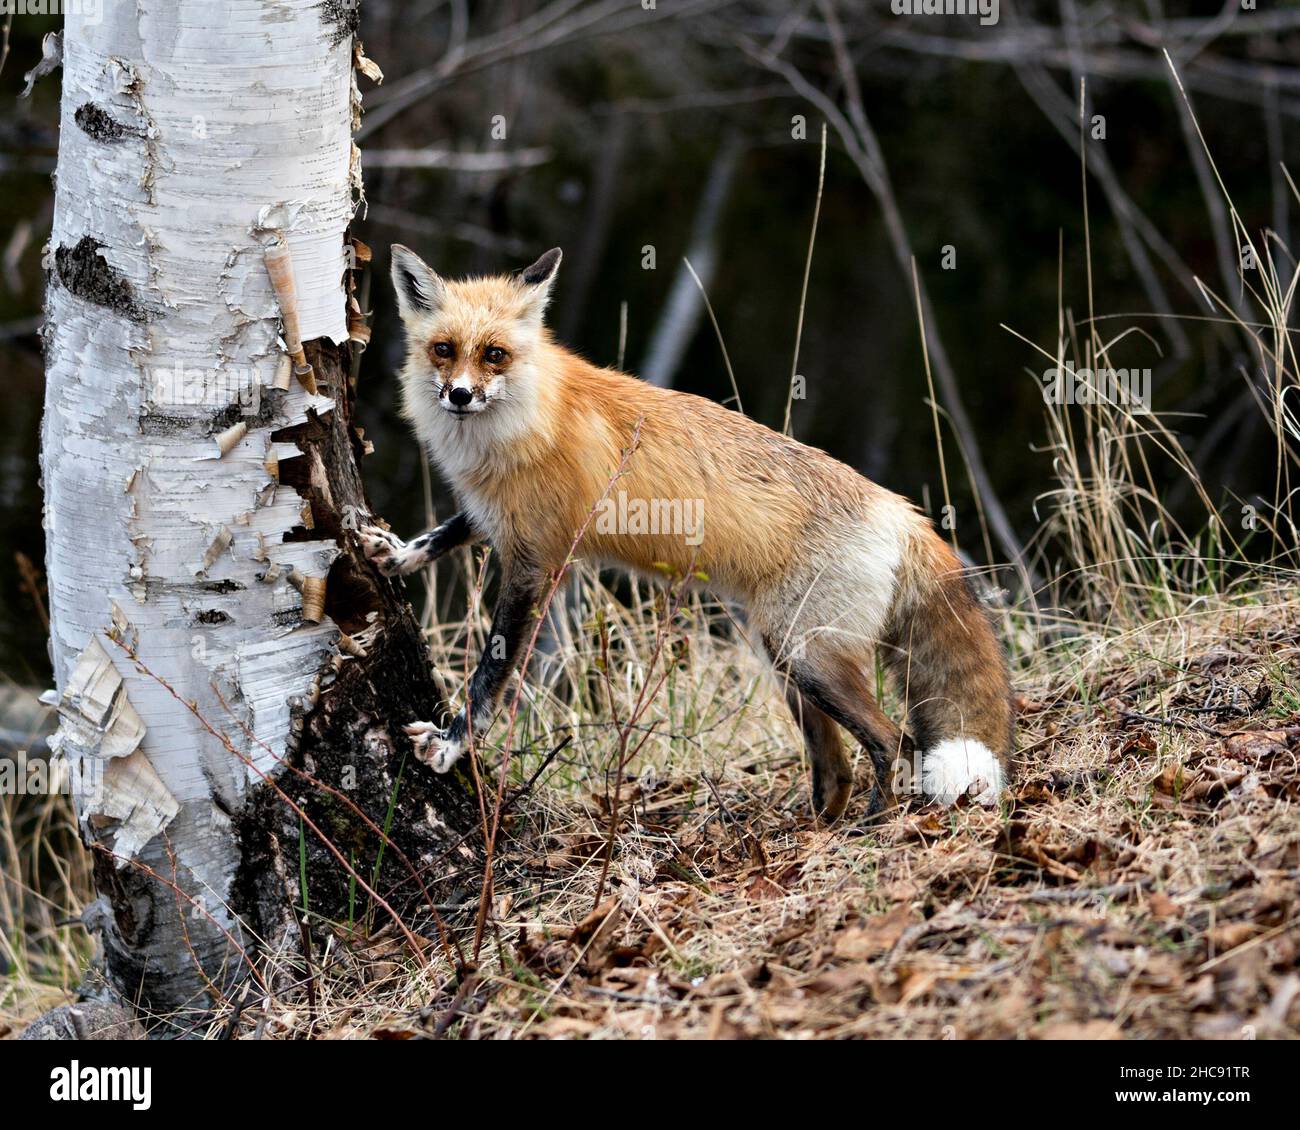 Vista ravvicinata del profilo Red Fox su un tronco di betulla con acqua sfocata e sfondo fogliare nel suo ambiente e habitat. Immagine Fox. Immagine. Foto Stock